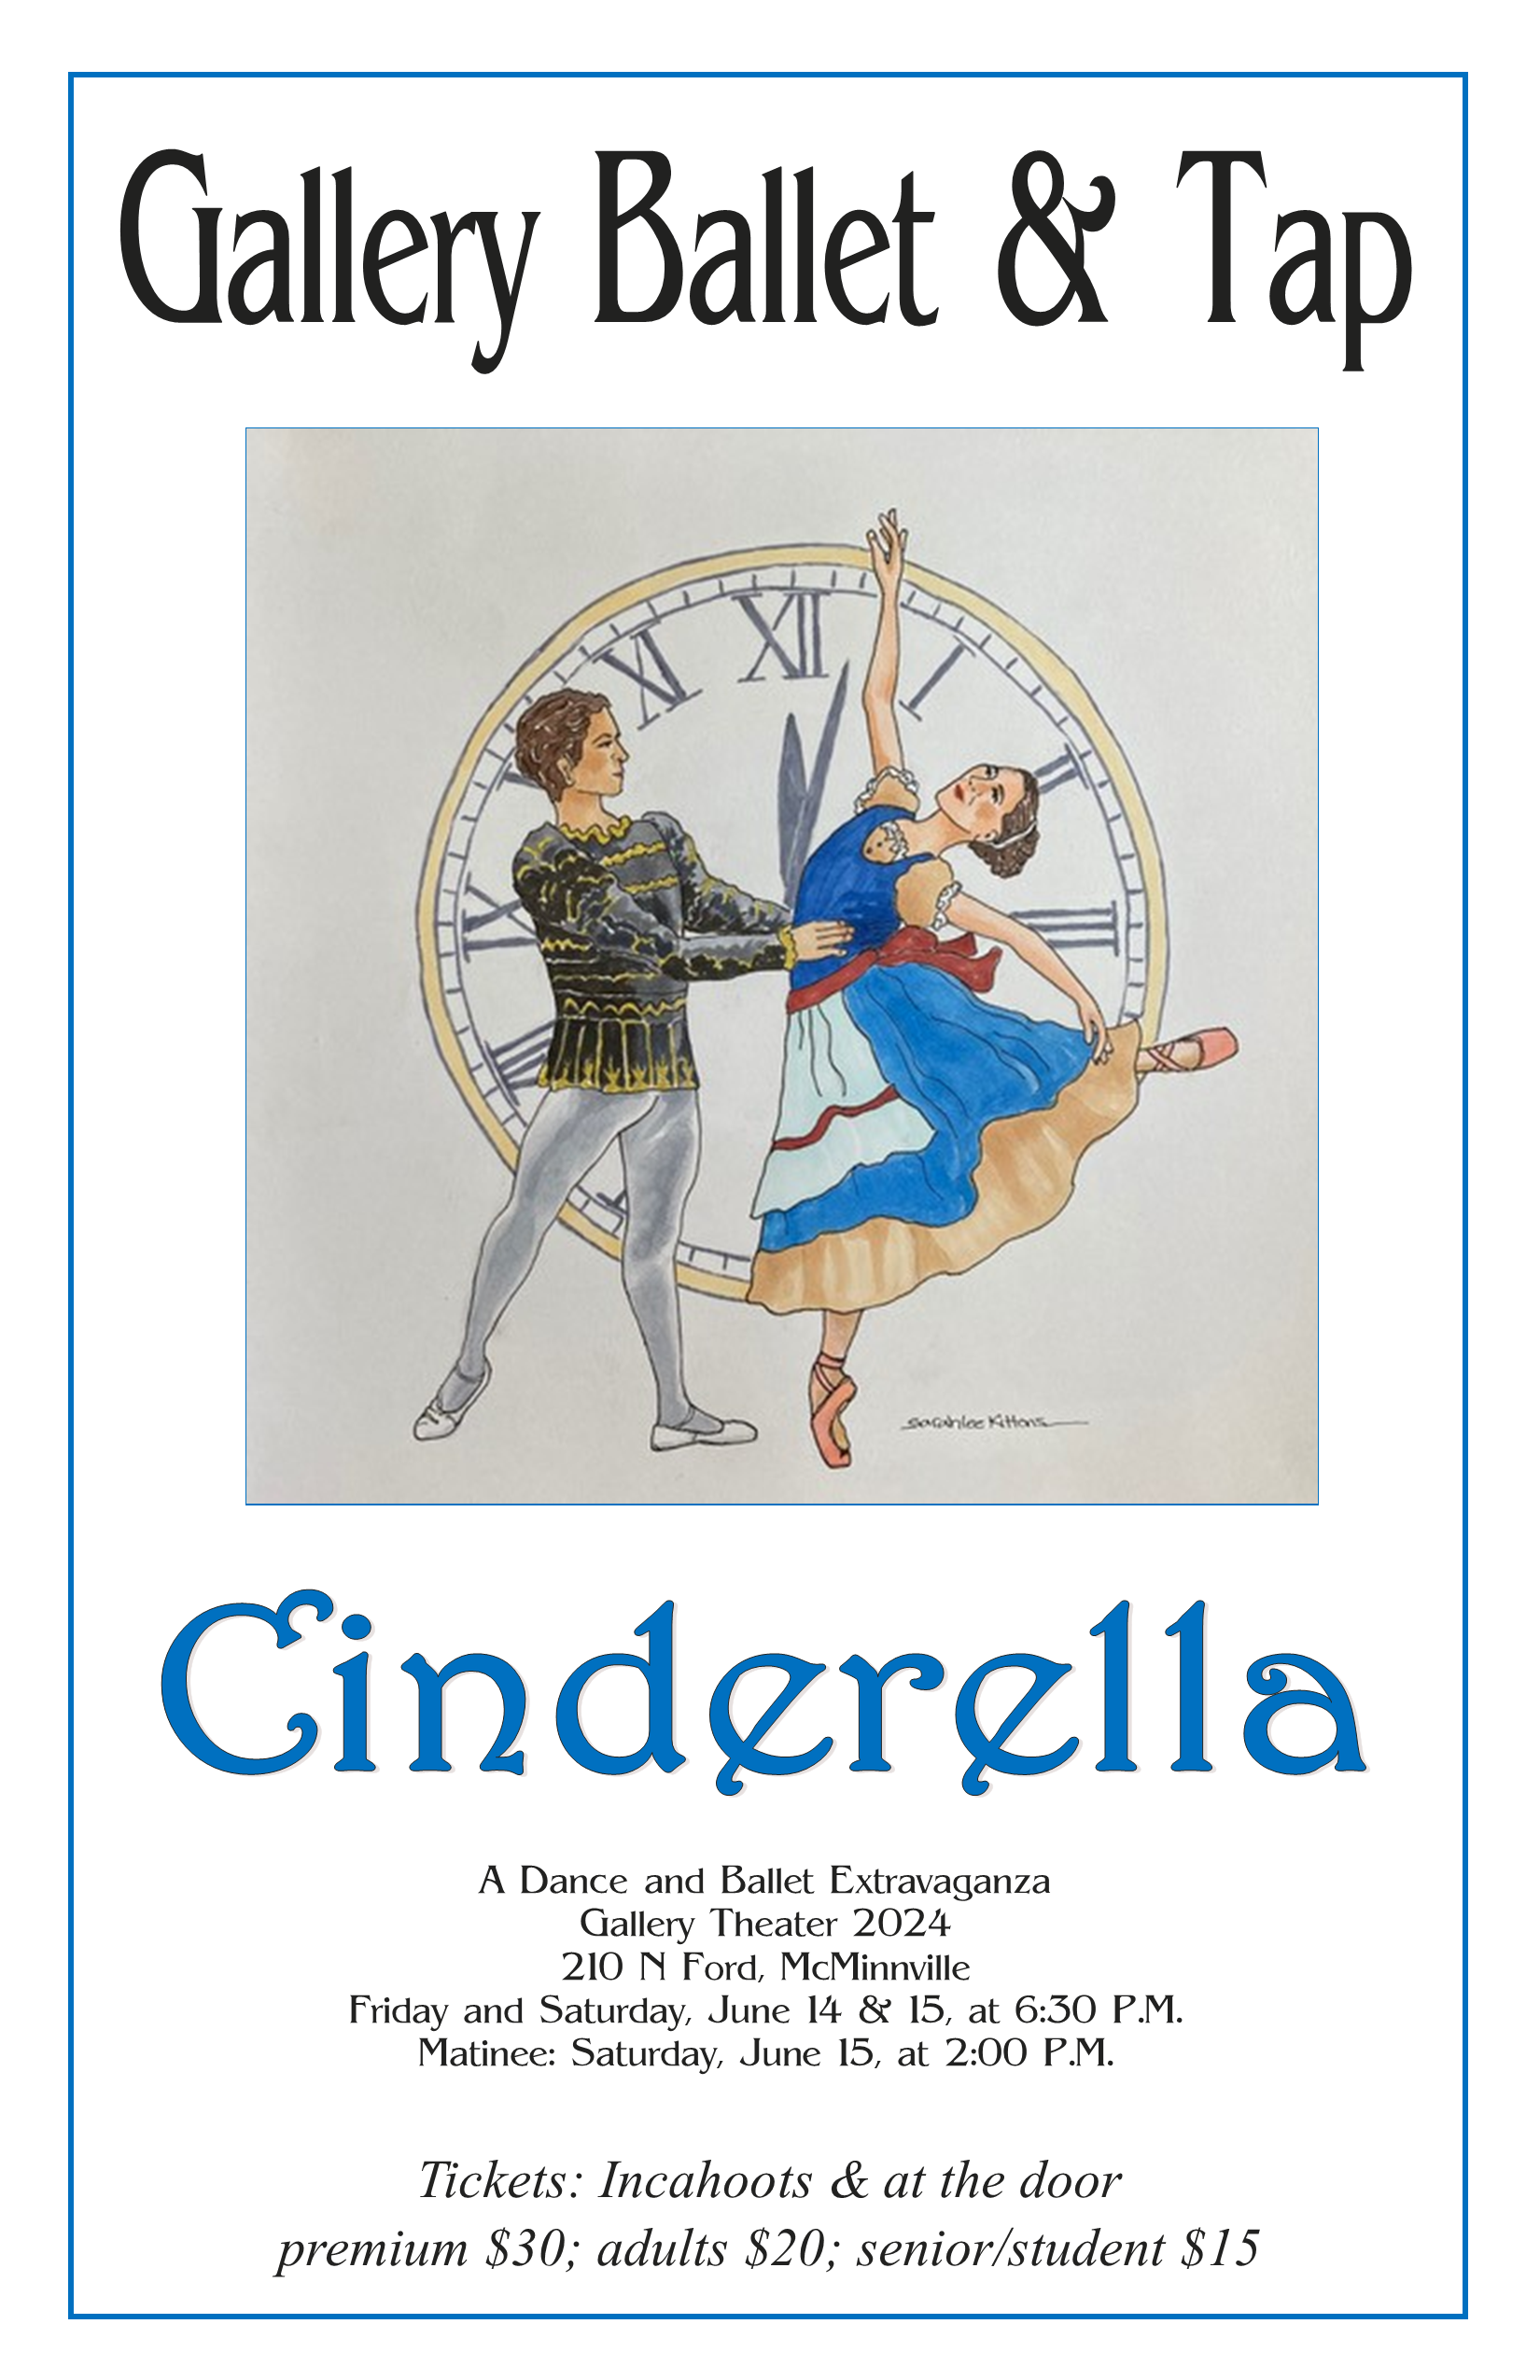 Cinderella- A Dance and Ballet Extravaganza